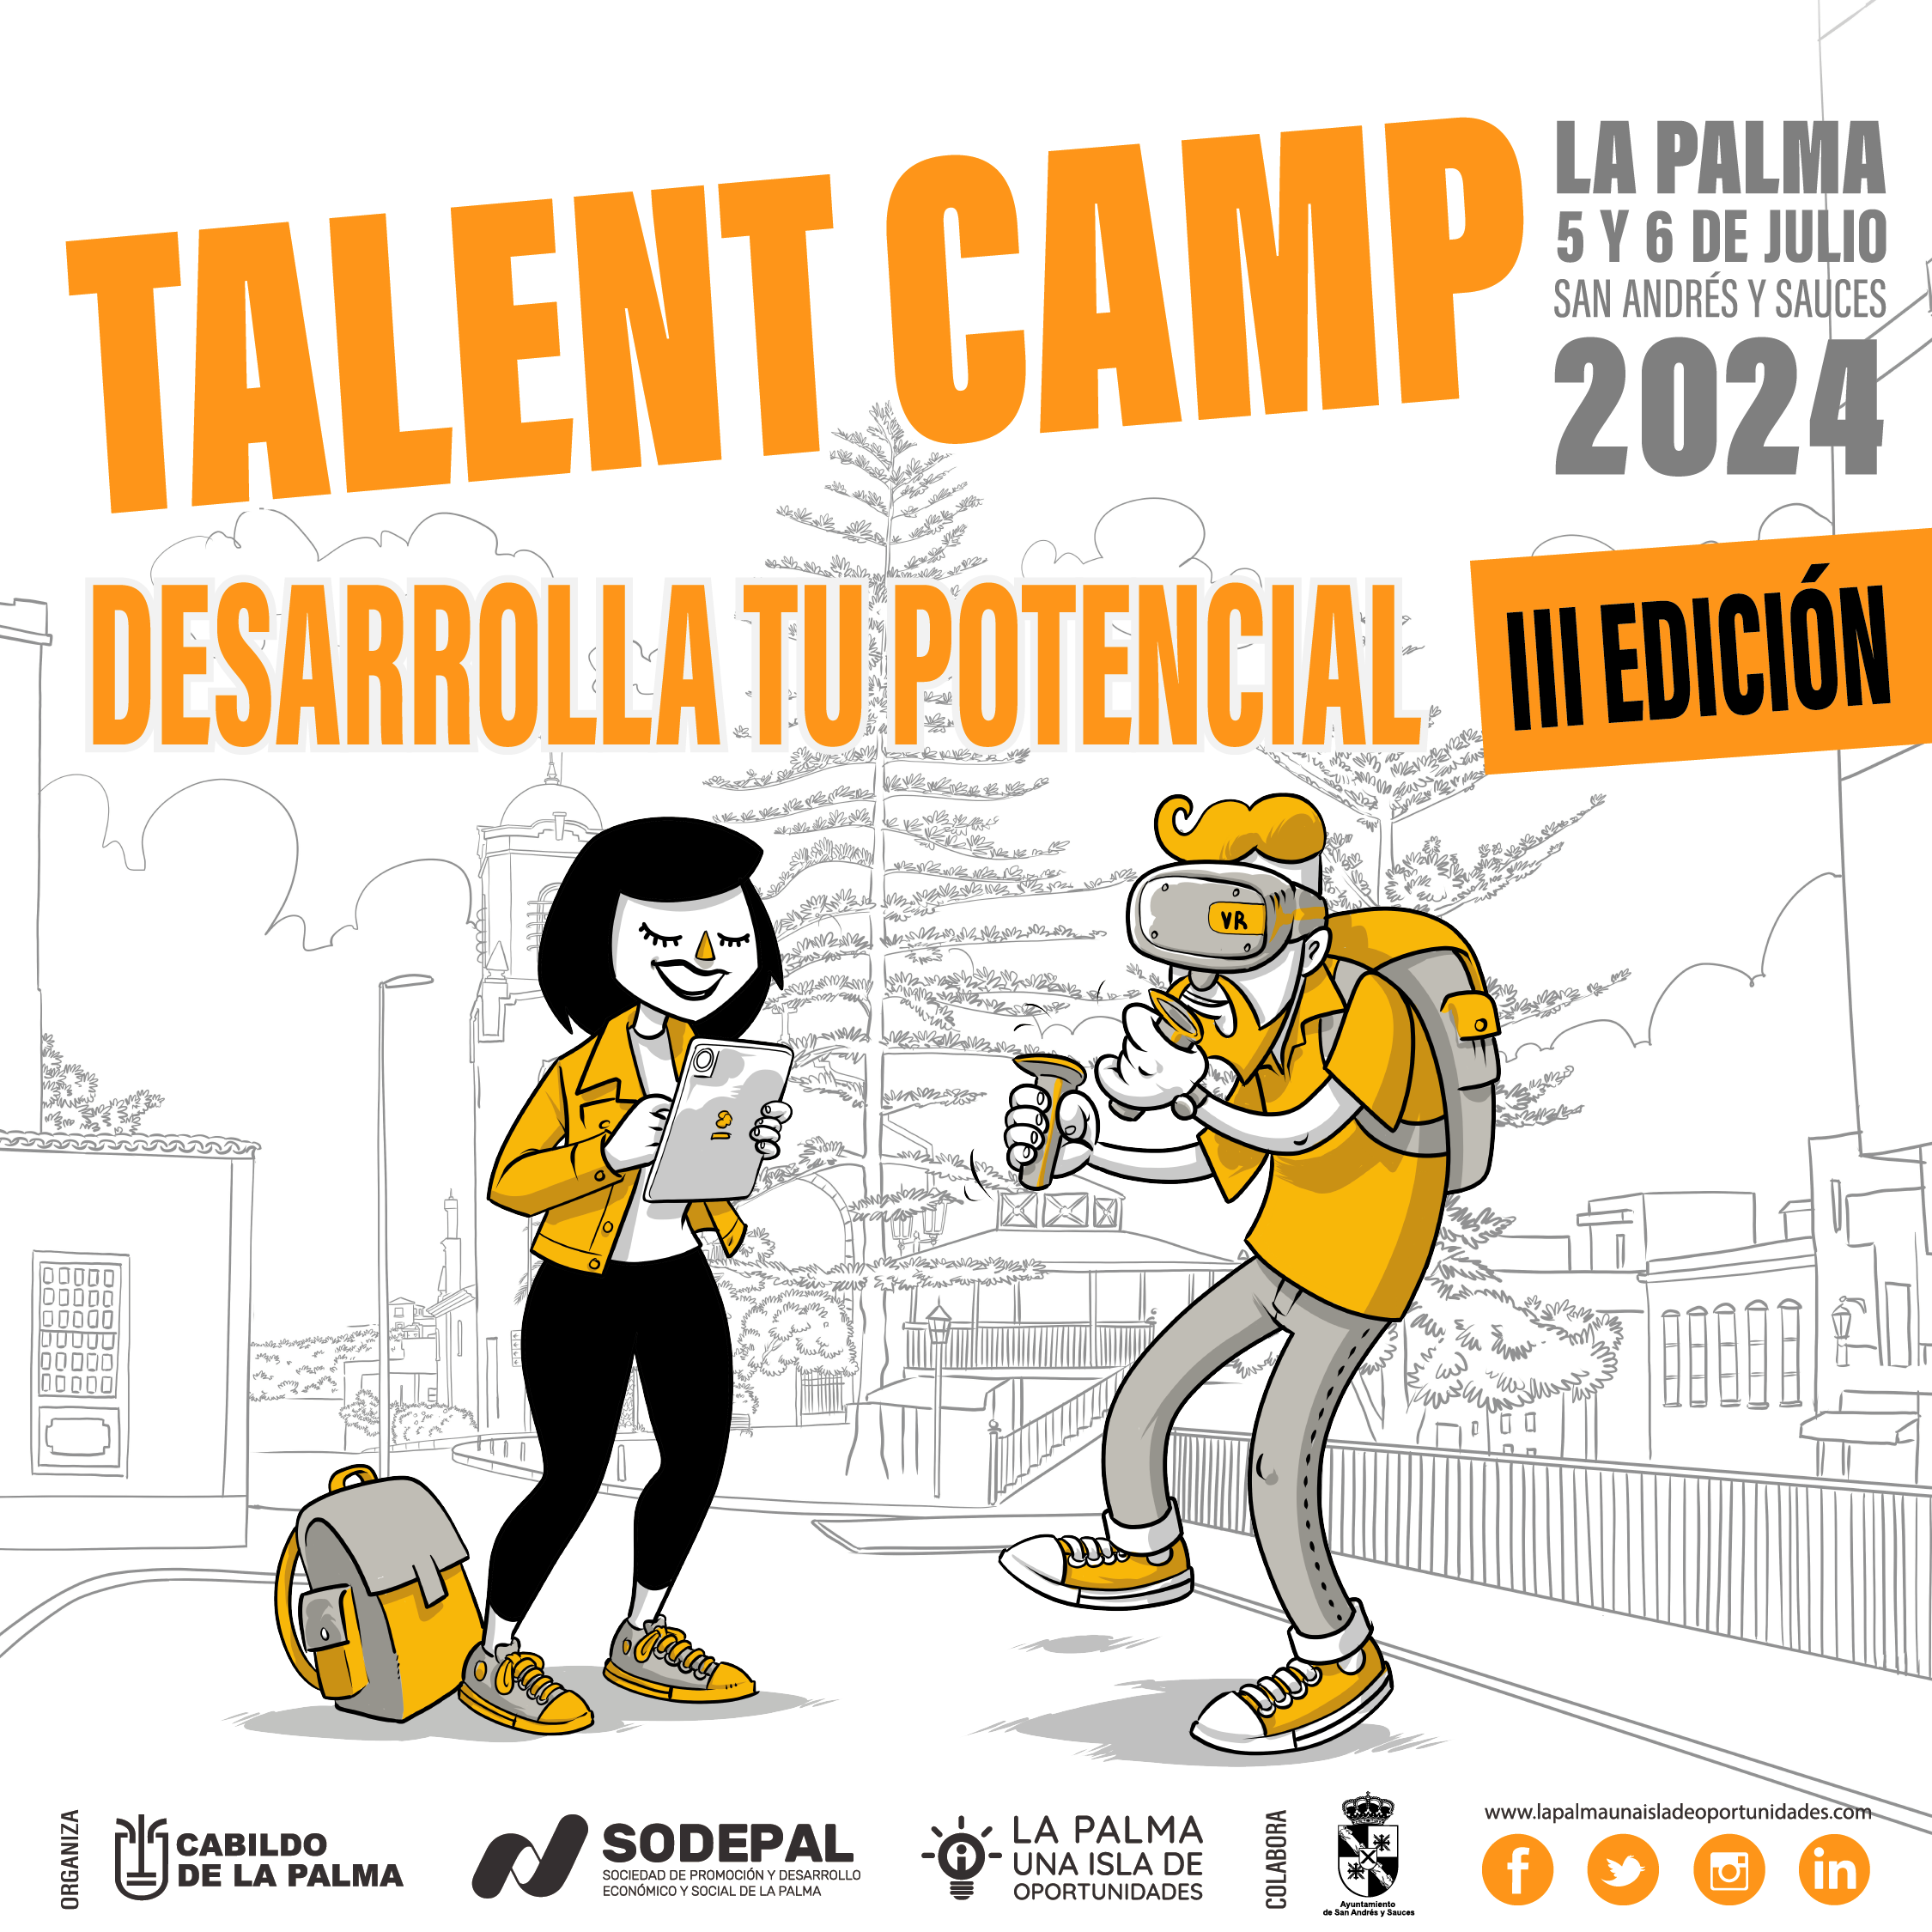 El Cabildo abre el plazo de inscripciones para la nueva edición del Talent Camp La Palma